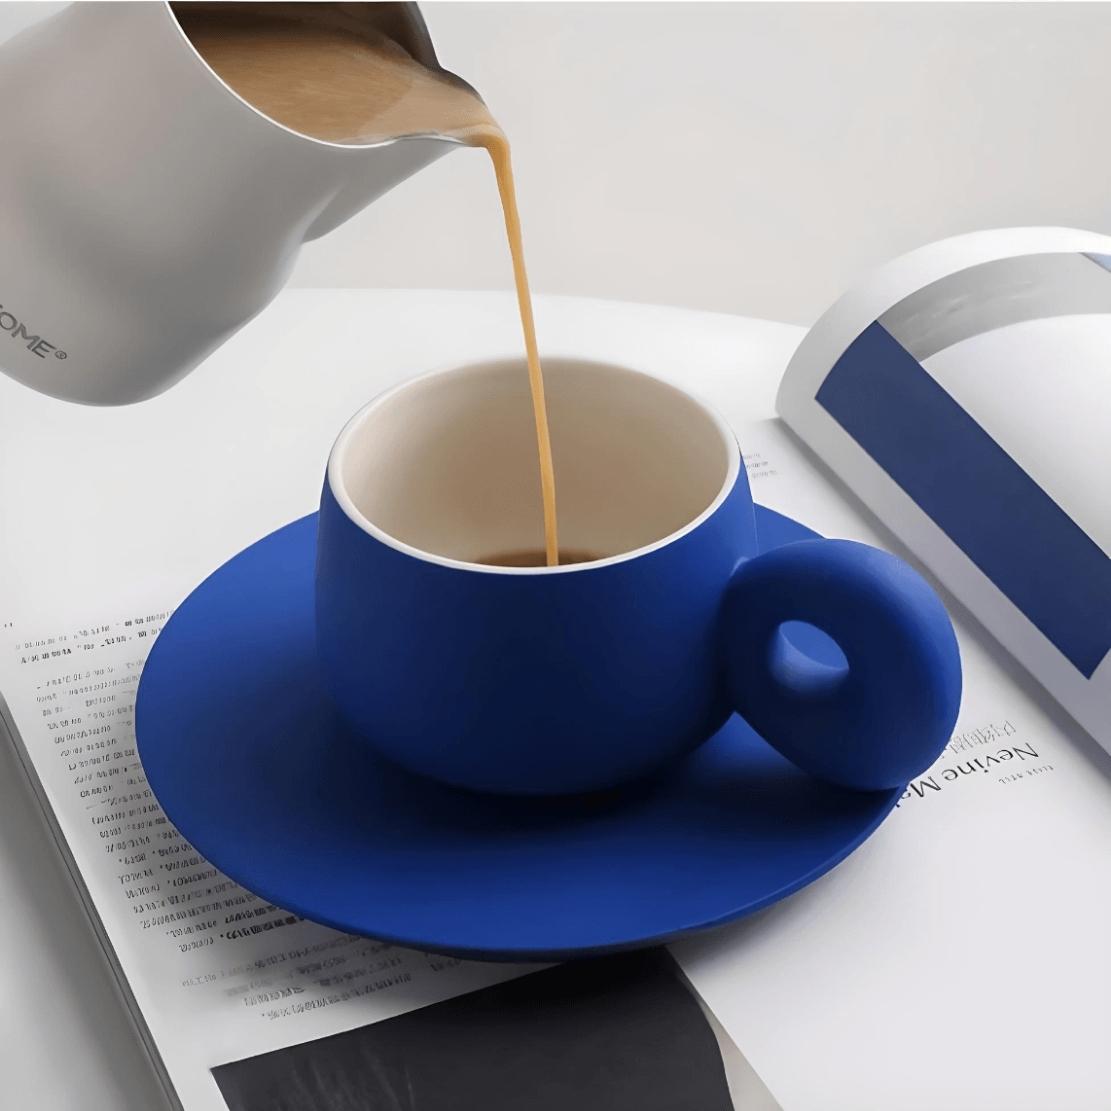 Ceramic blue coffee mug with saucer